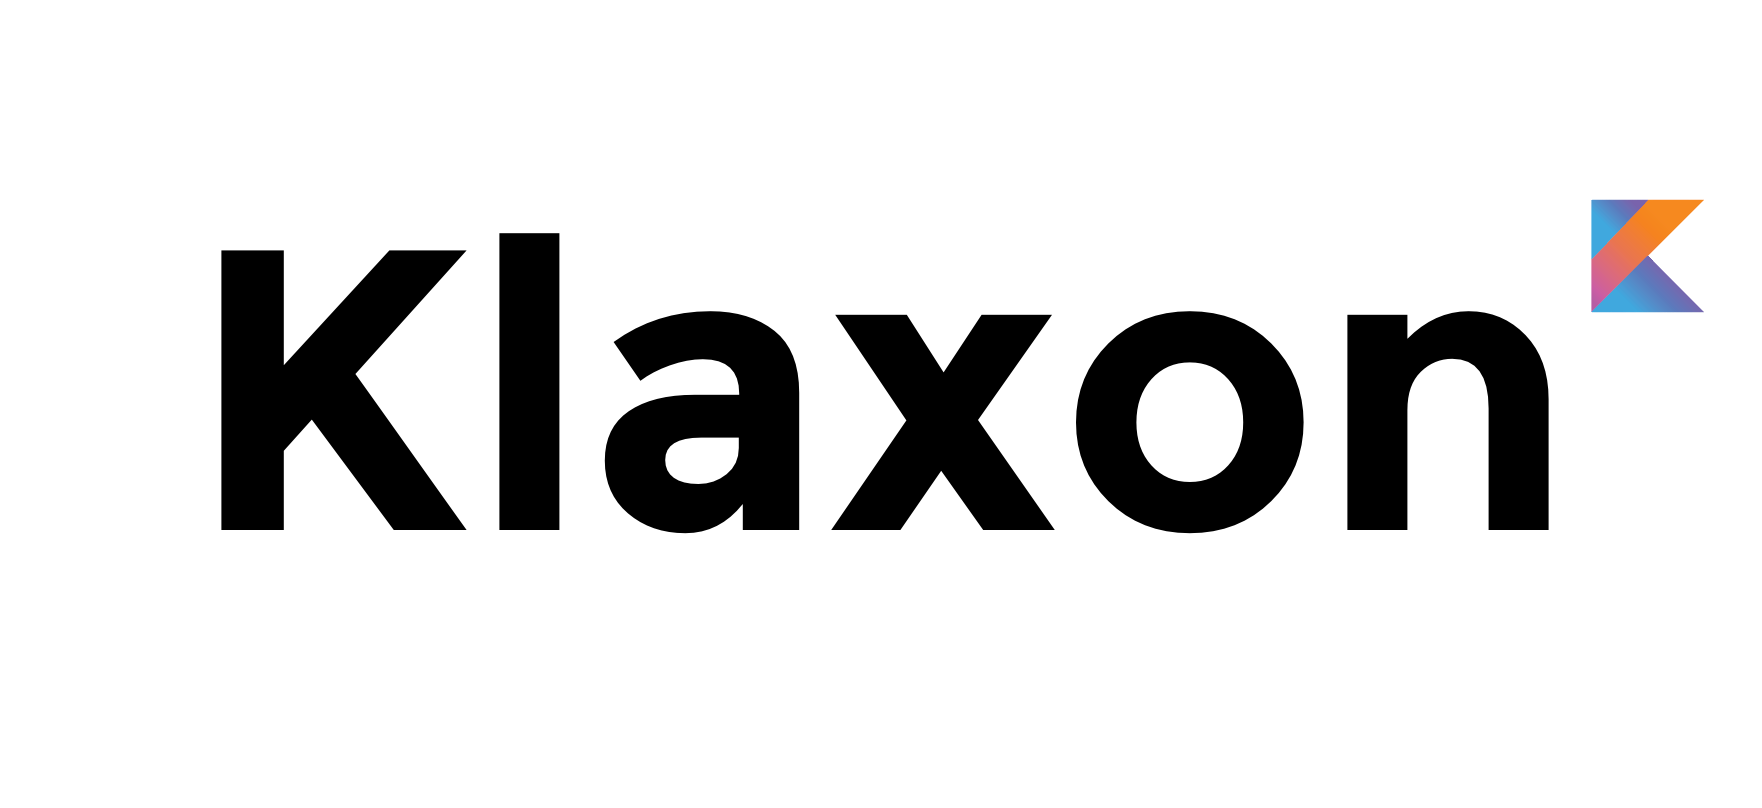 Klaxon logo